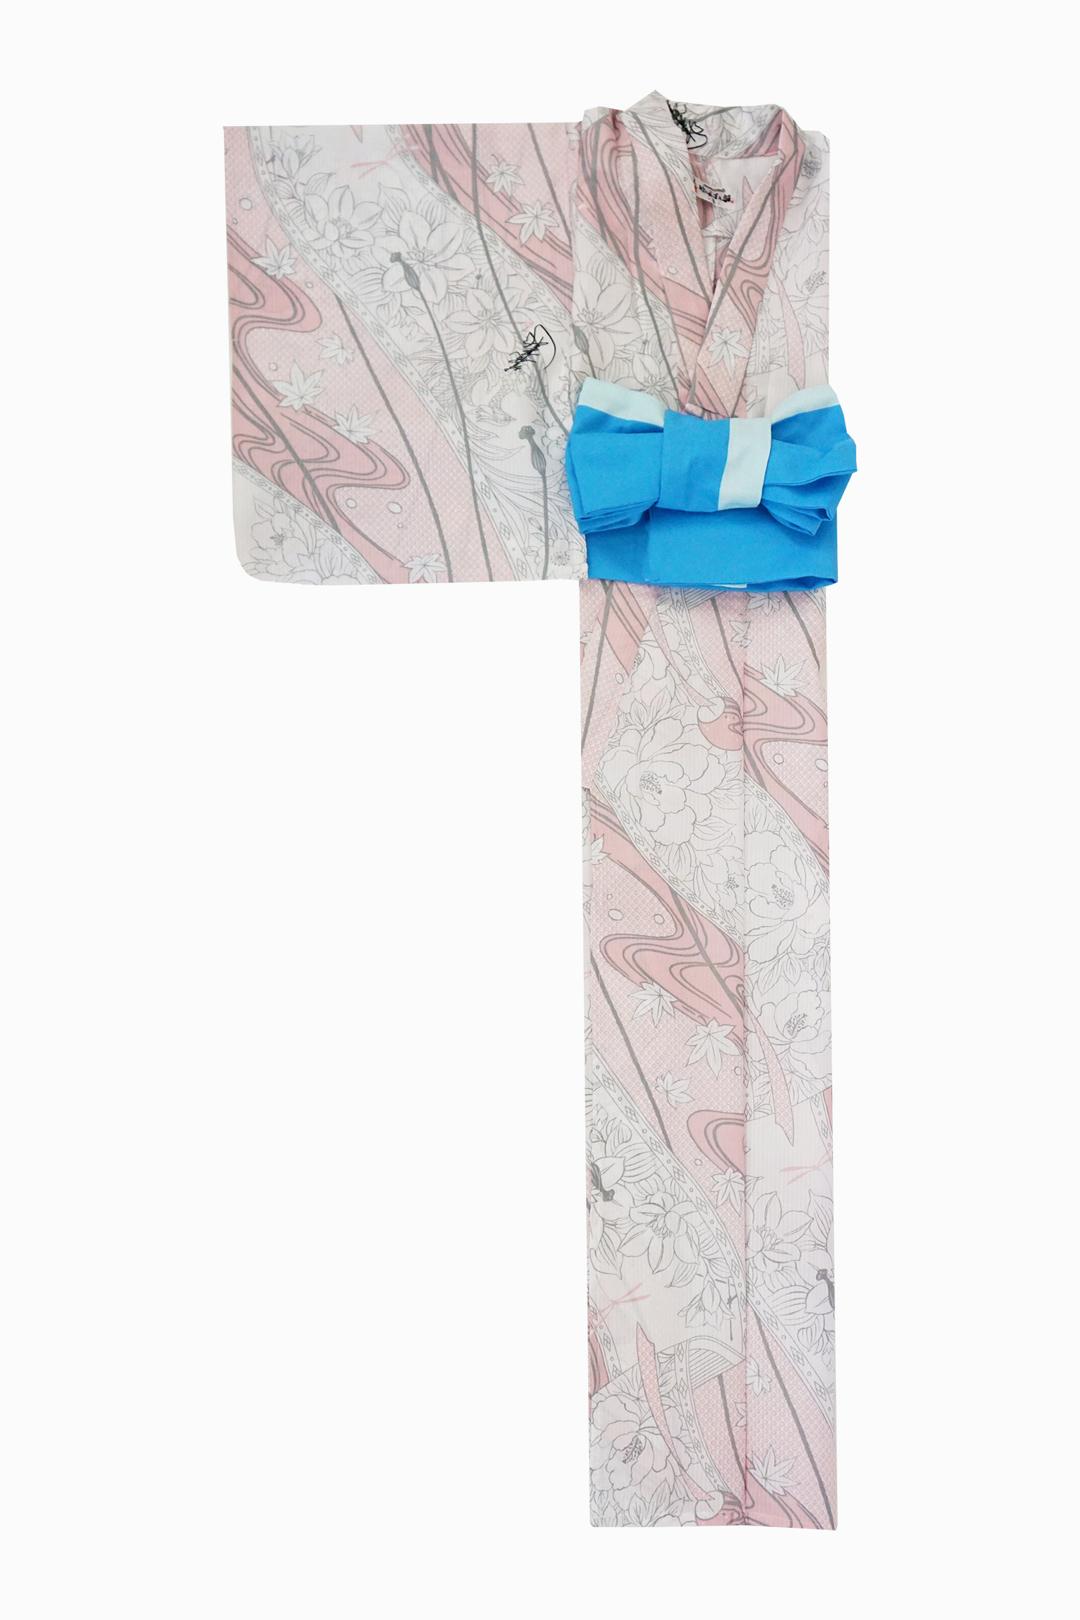 帯が選べる! (衿あり) 浴衣〈華みやび/淡ピンク〉　※浴衣単品 ¥13,200画像